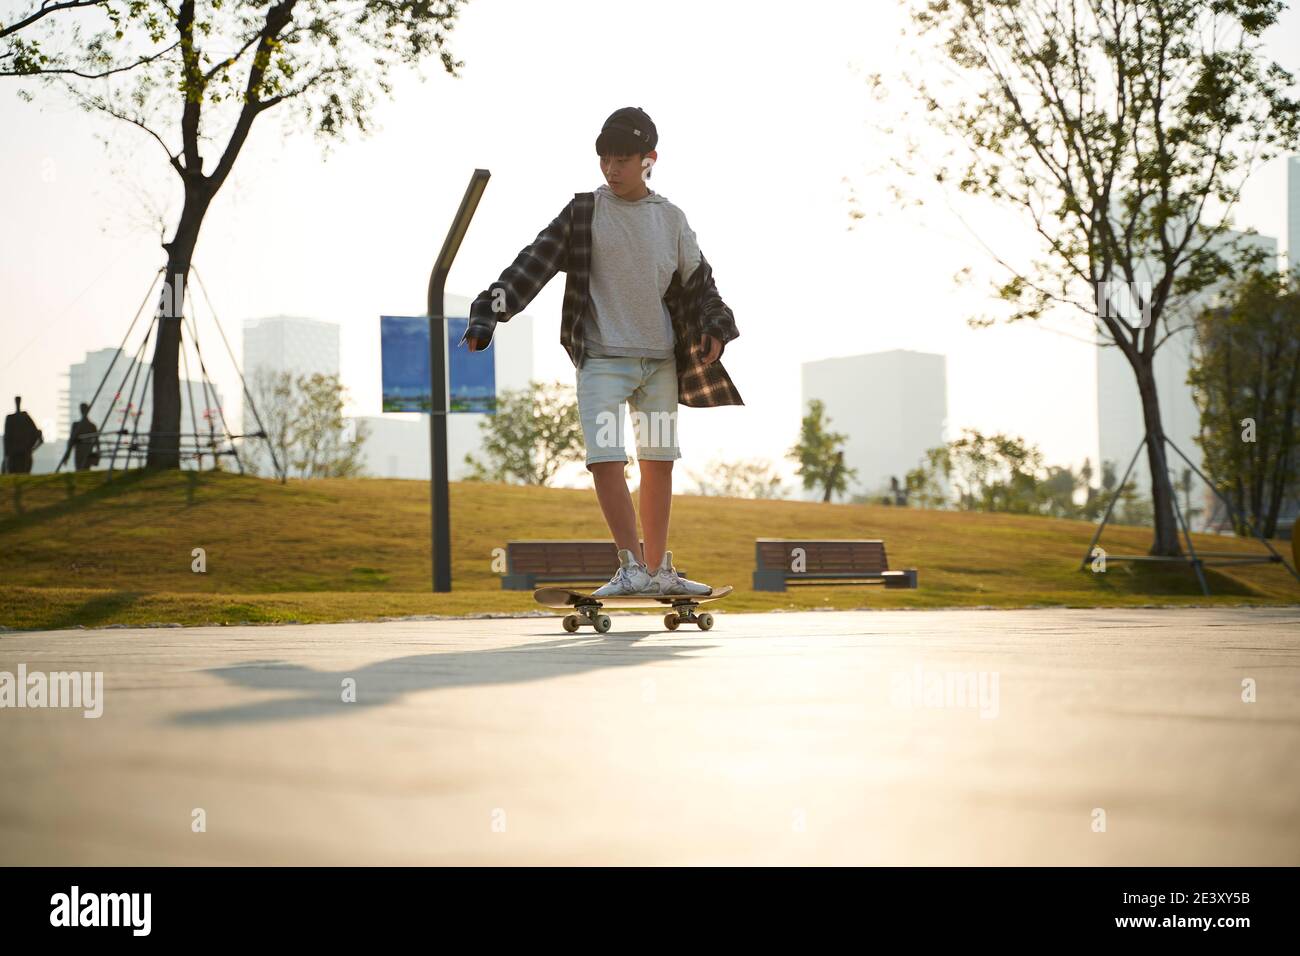 un garçon asiatique qui fait du skateboard en plein air dans la rue Banque D'Images